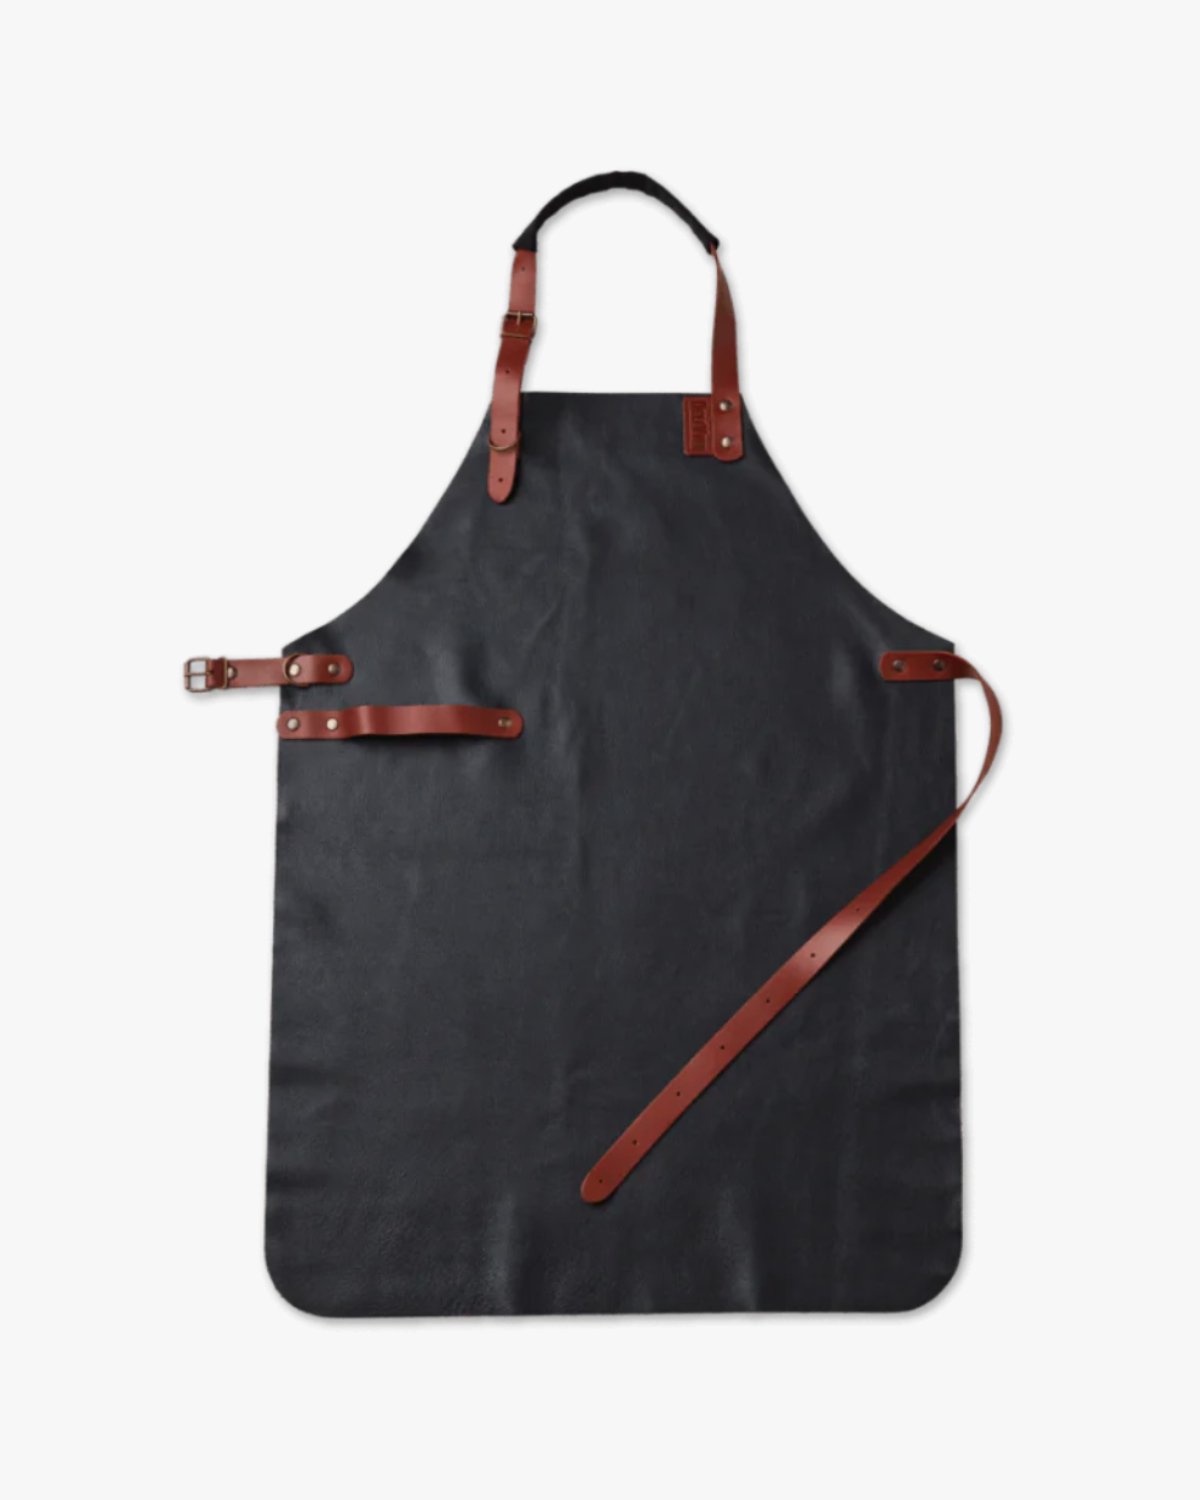 Delivita Leather Apron - The Outdoor Kitchen Company Ltd